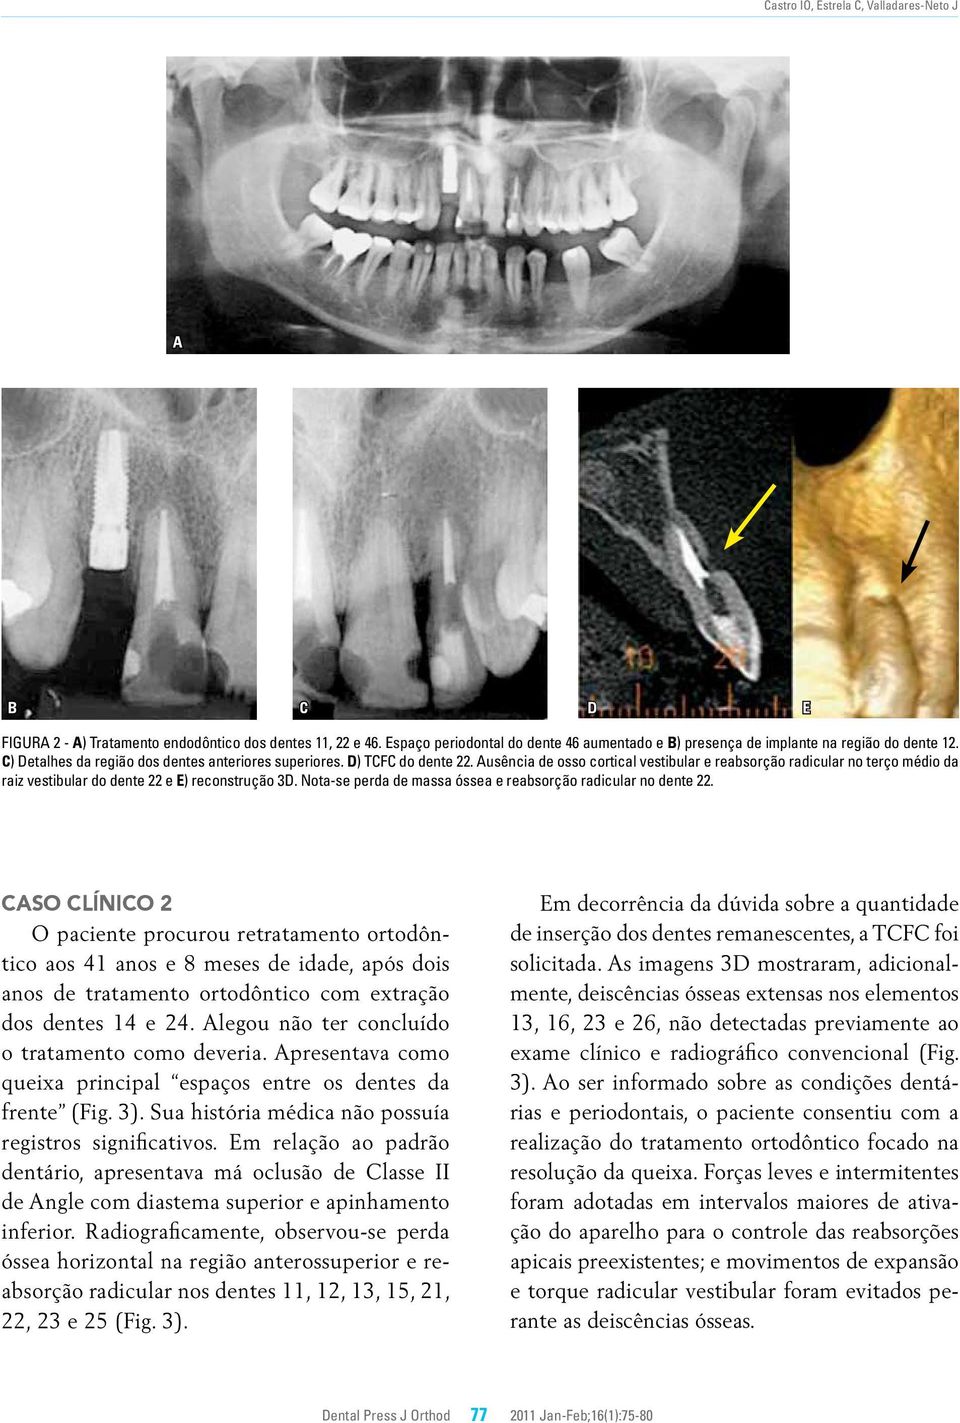 Ausência de osso cortical vestibular e reabsorção radicular no terço médio da raiz vestibular do dente 22 e E) reconstrução 3D. Nota-se perda de massa óssea e reabsorção radicular no dente 22.